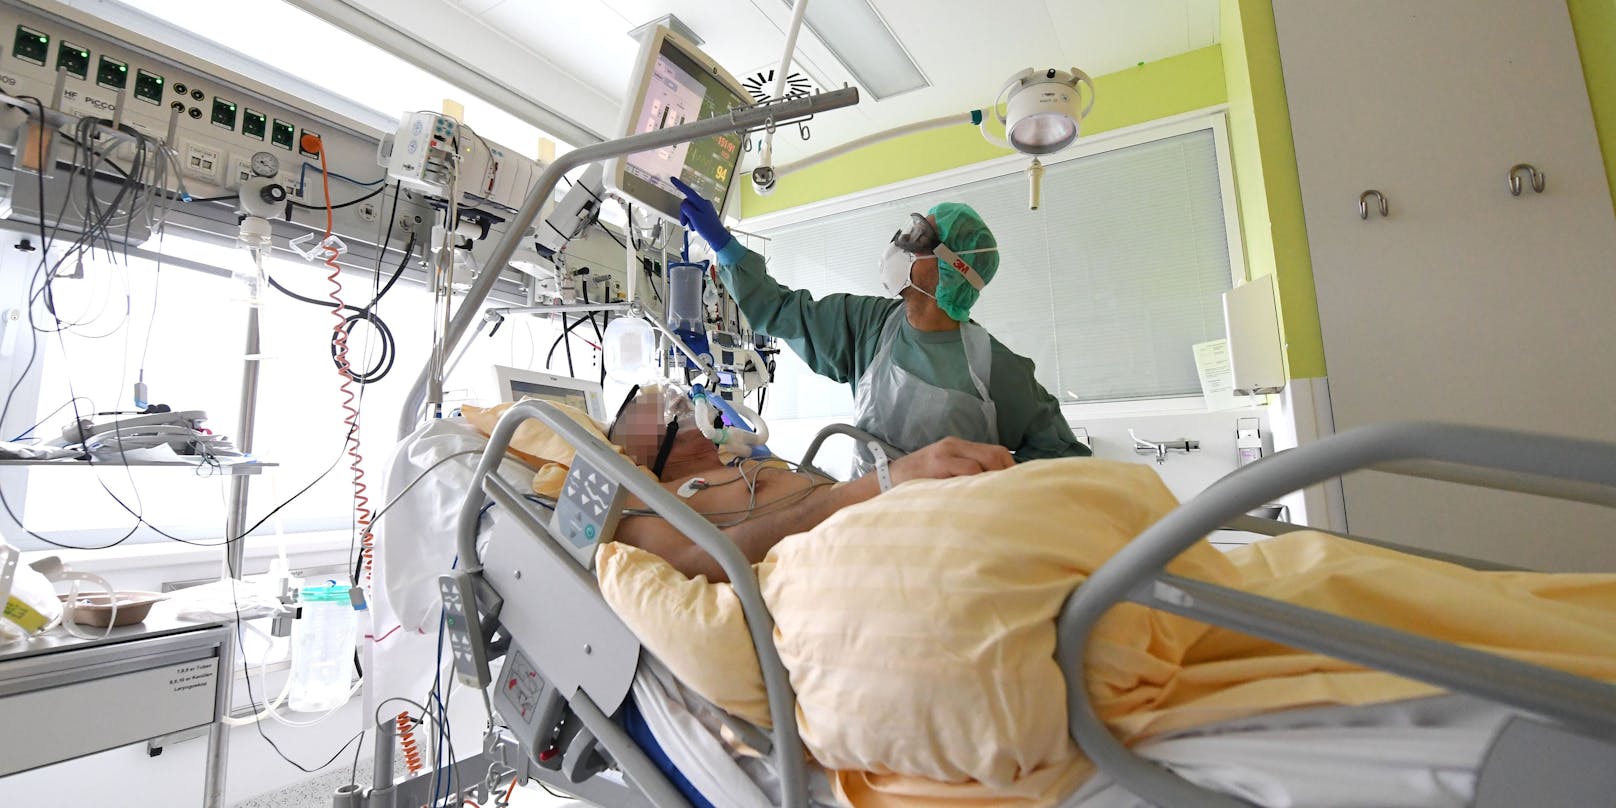 Ein Corona-Patient wird auf einer Intensivstation behandelt. (Archivfoto)